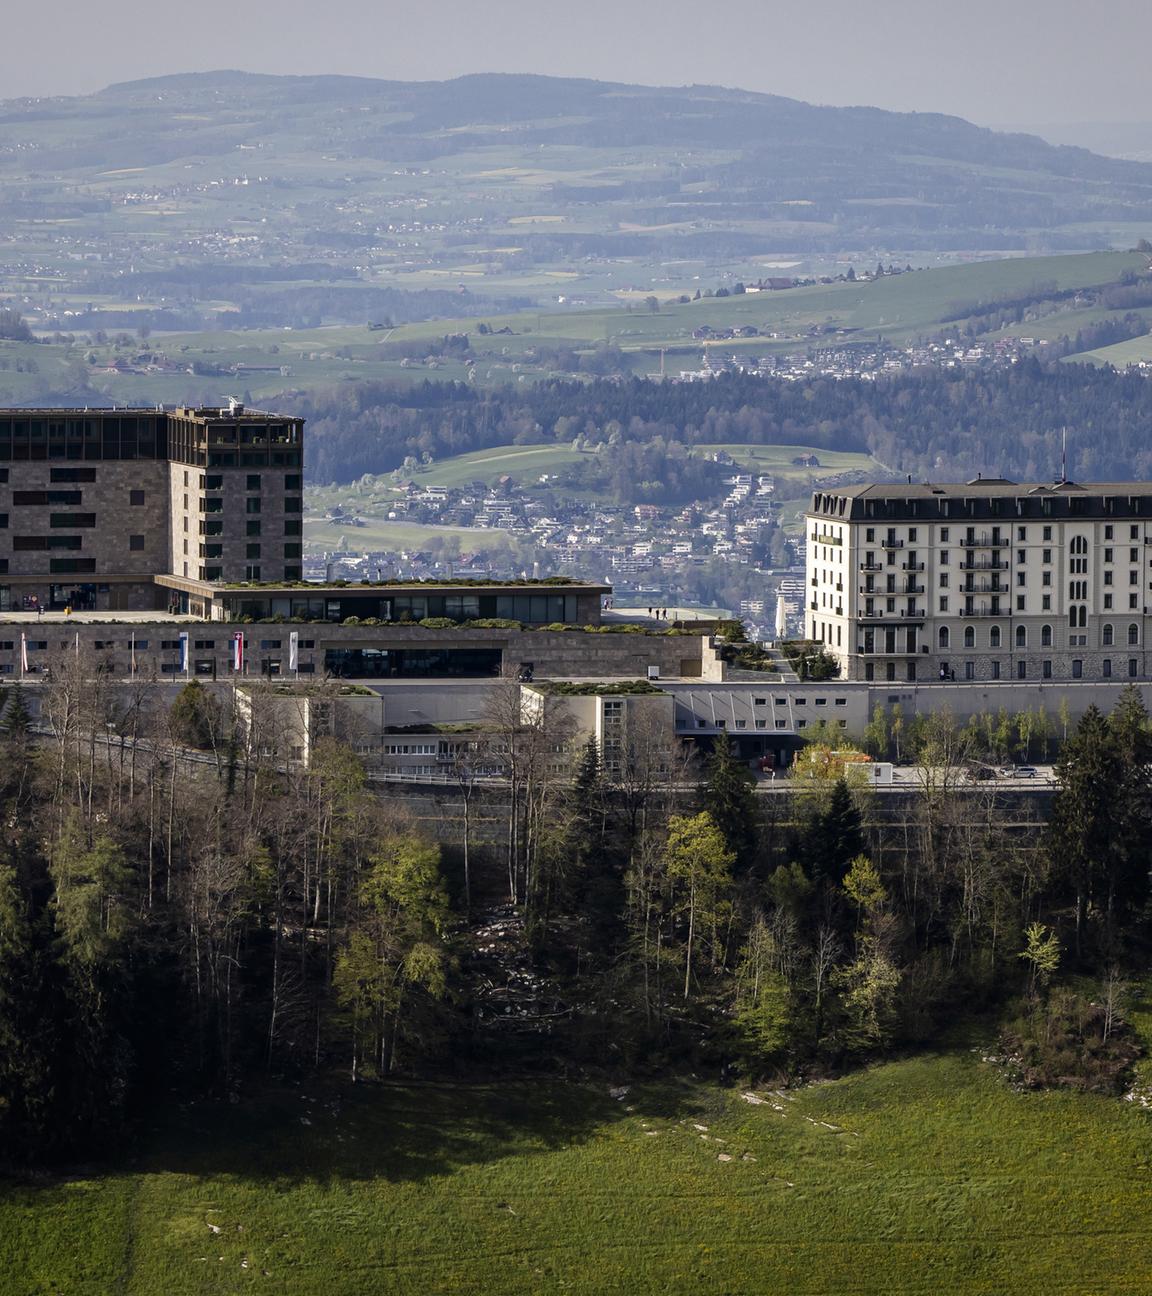 Schweiz, Obbuergen: Das Bürgenstock Resort ist auf dem Berg Bürgenstock oberhalb des Vierwaldstättersees zu sehen. Archivbild